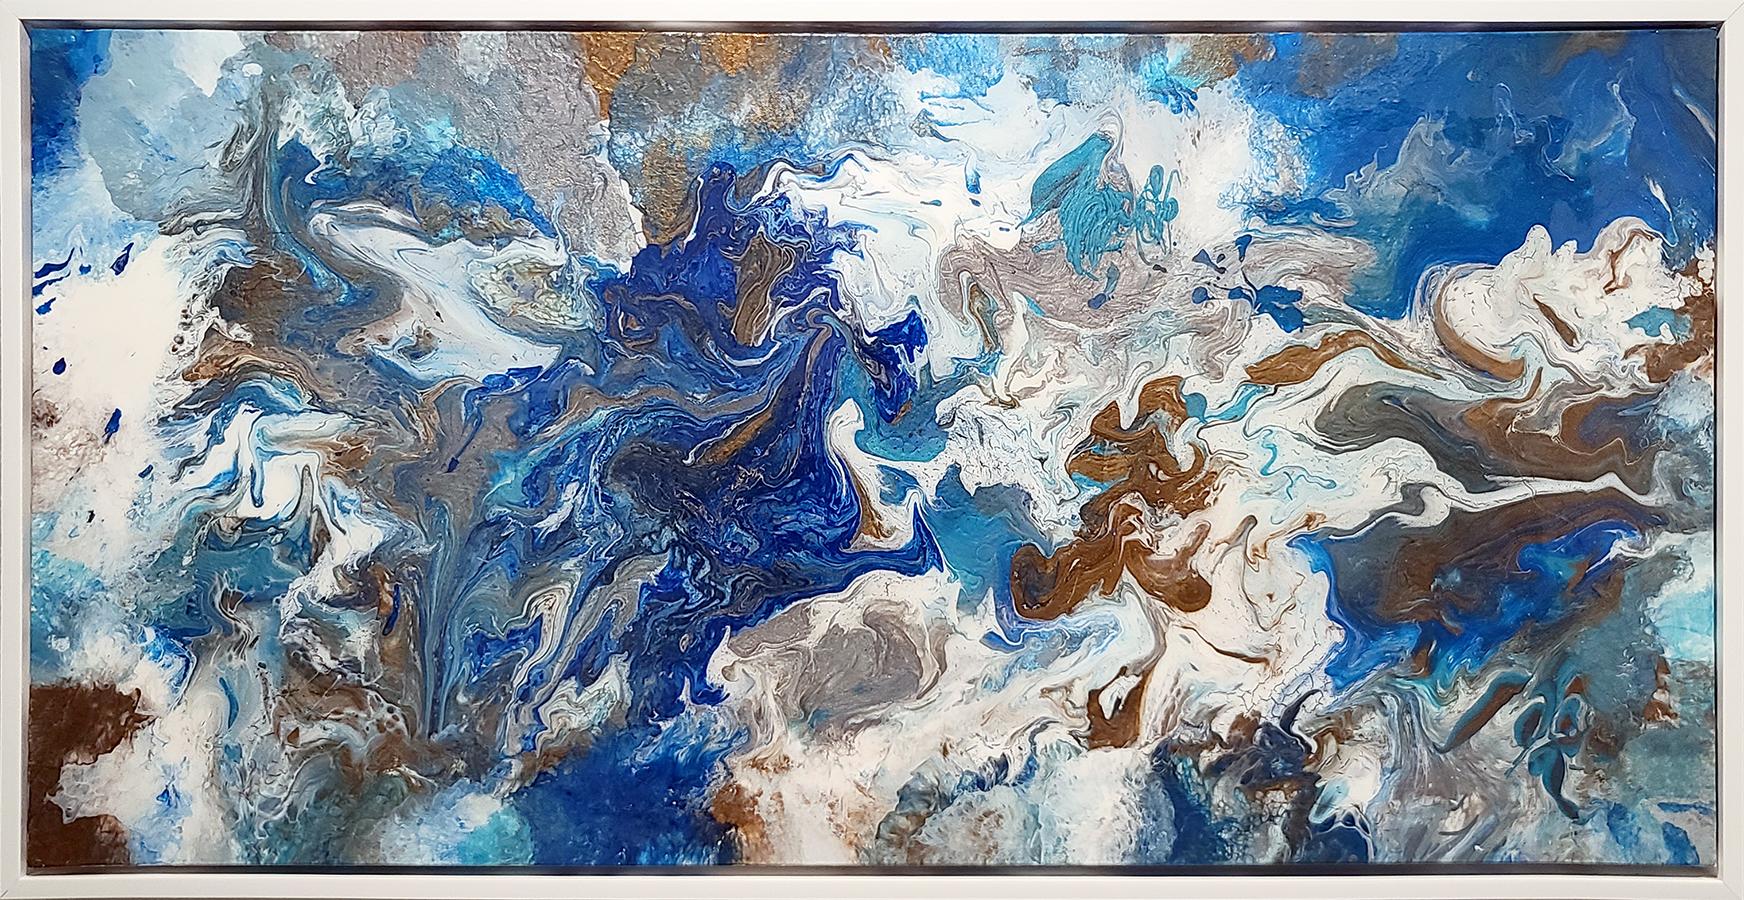 Abstract Painting Nickol Renae - « Clarté cristalline »  24x48 Acrylique et résine sur toile